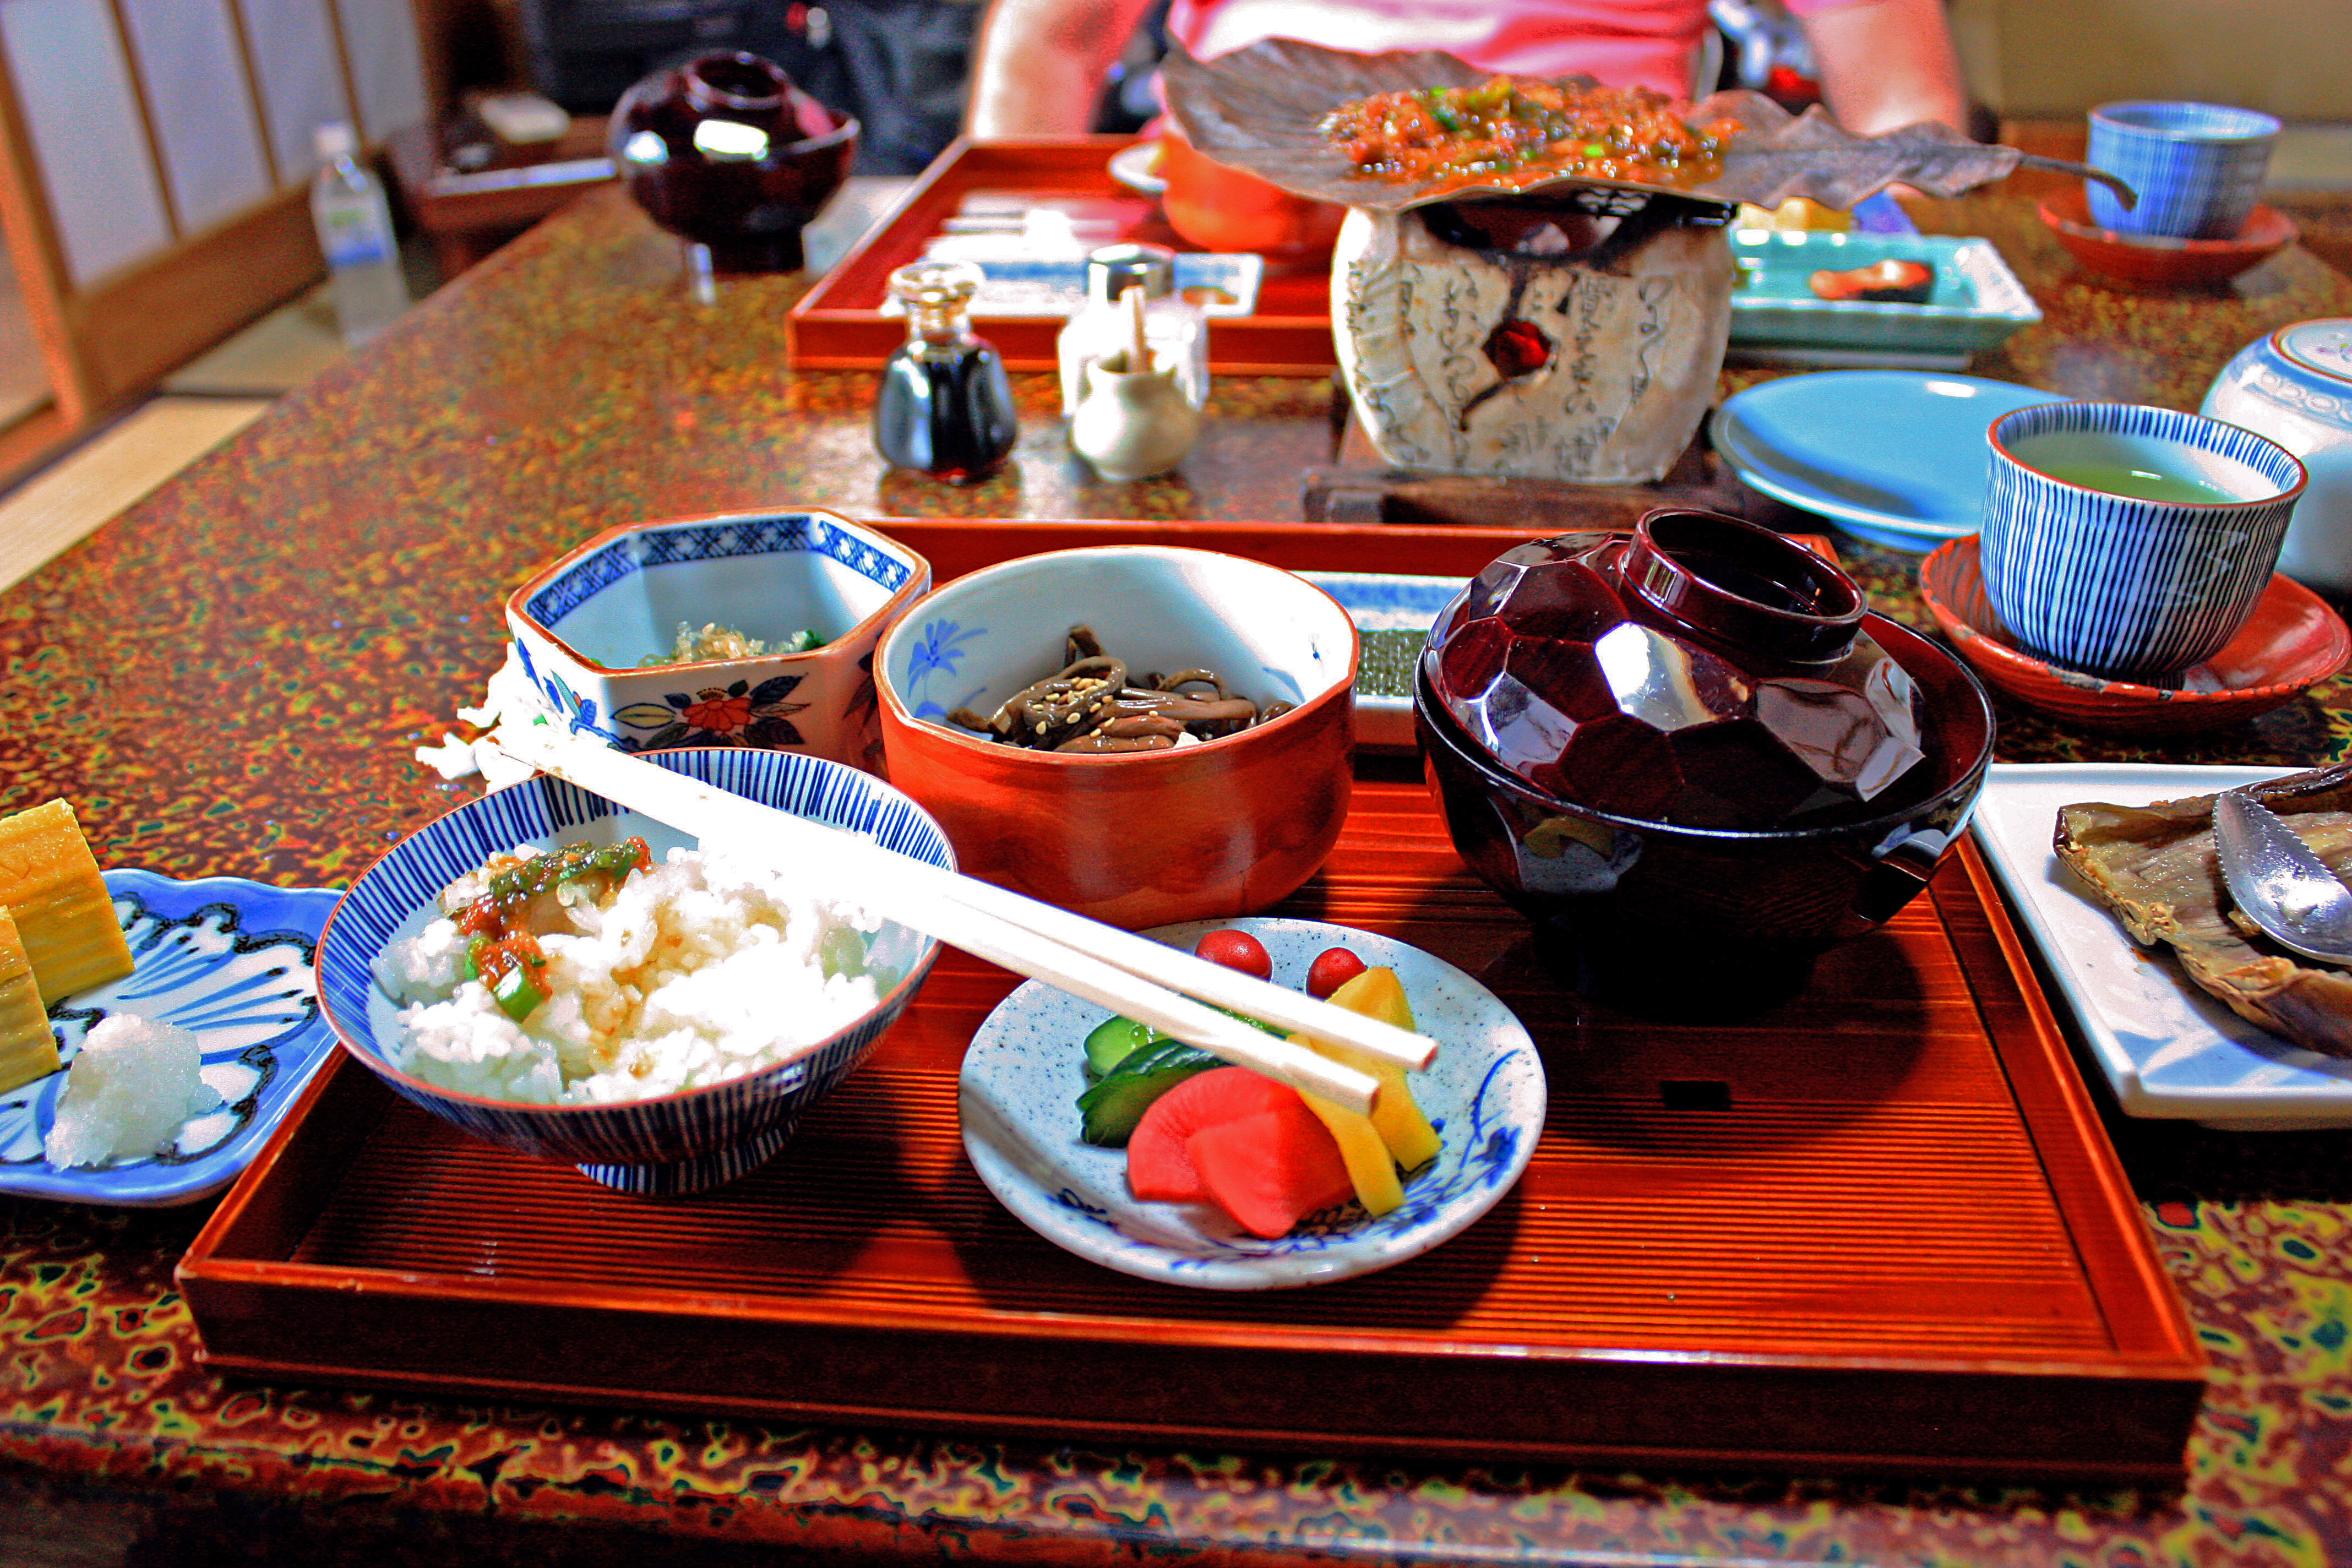 Breakfast at Sumiyoshi ryokan